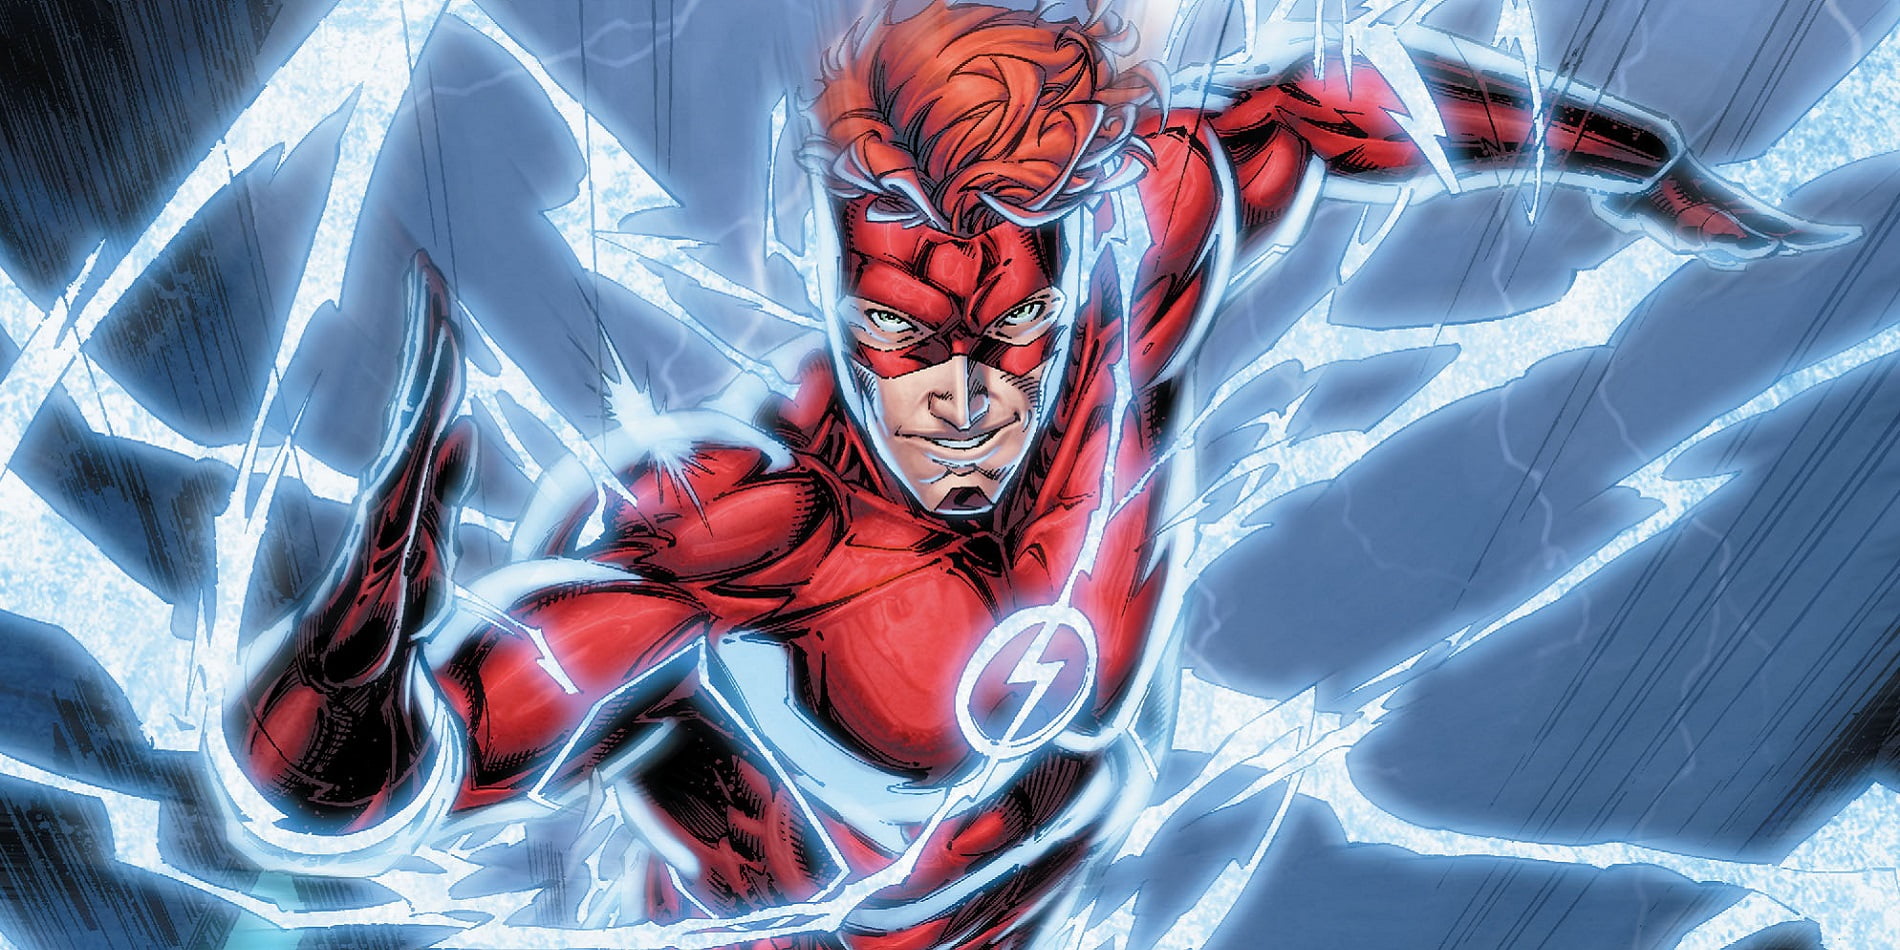 The Flash digital wallpaper, DC Comics